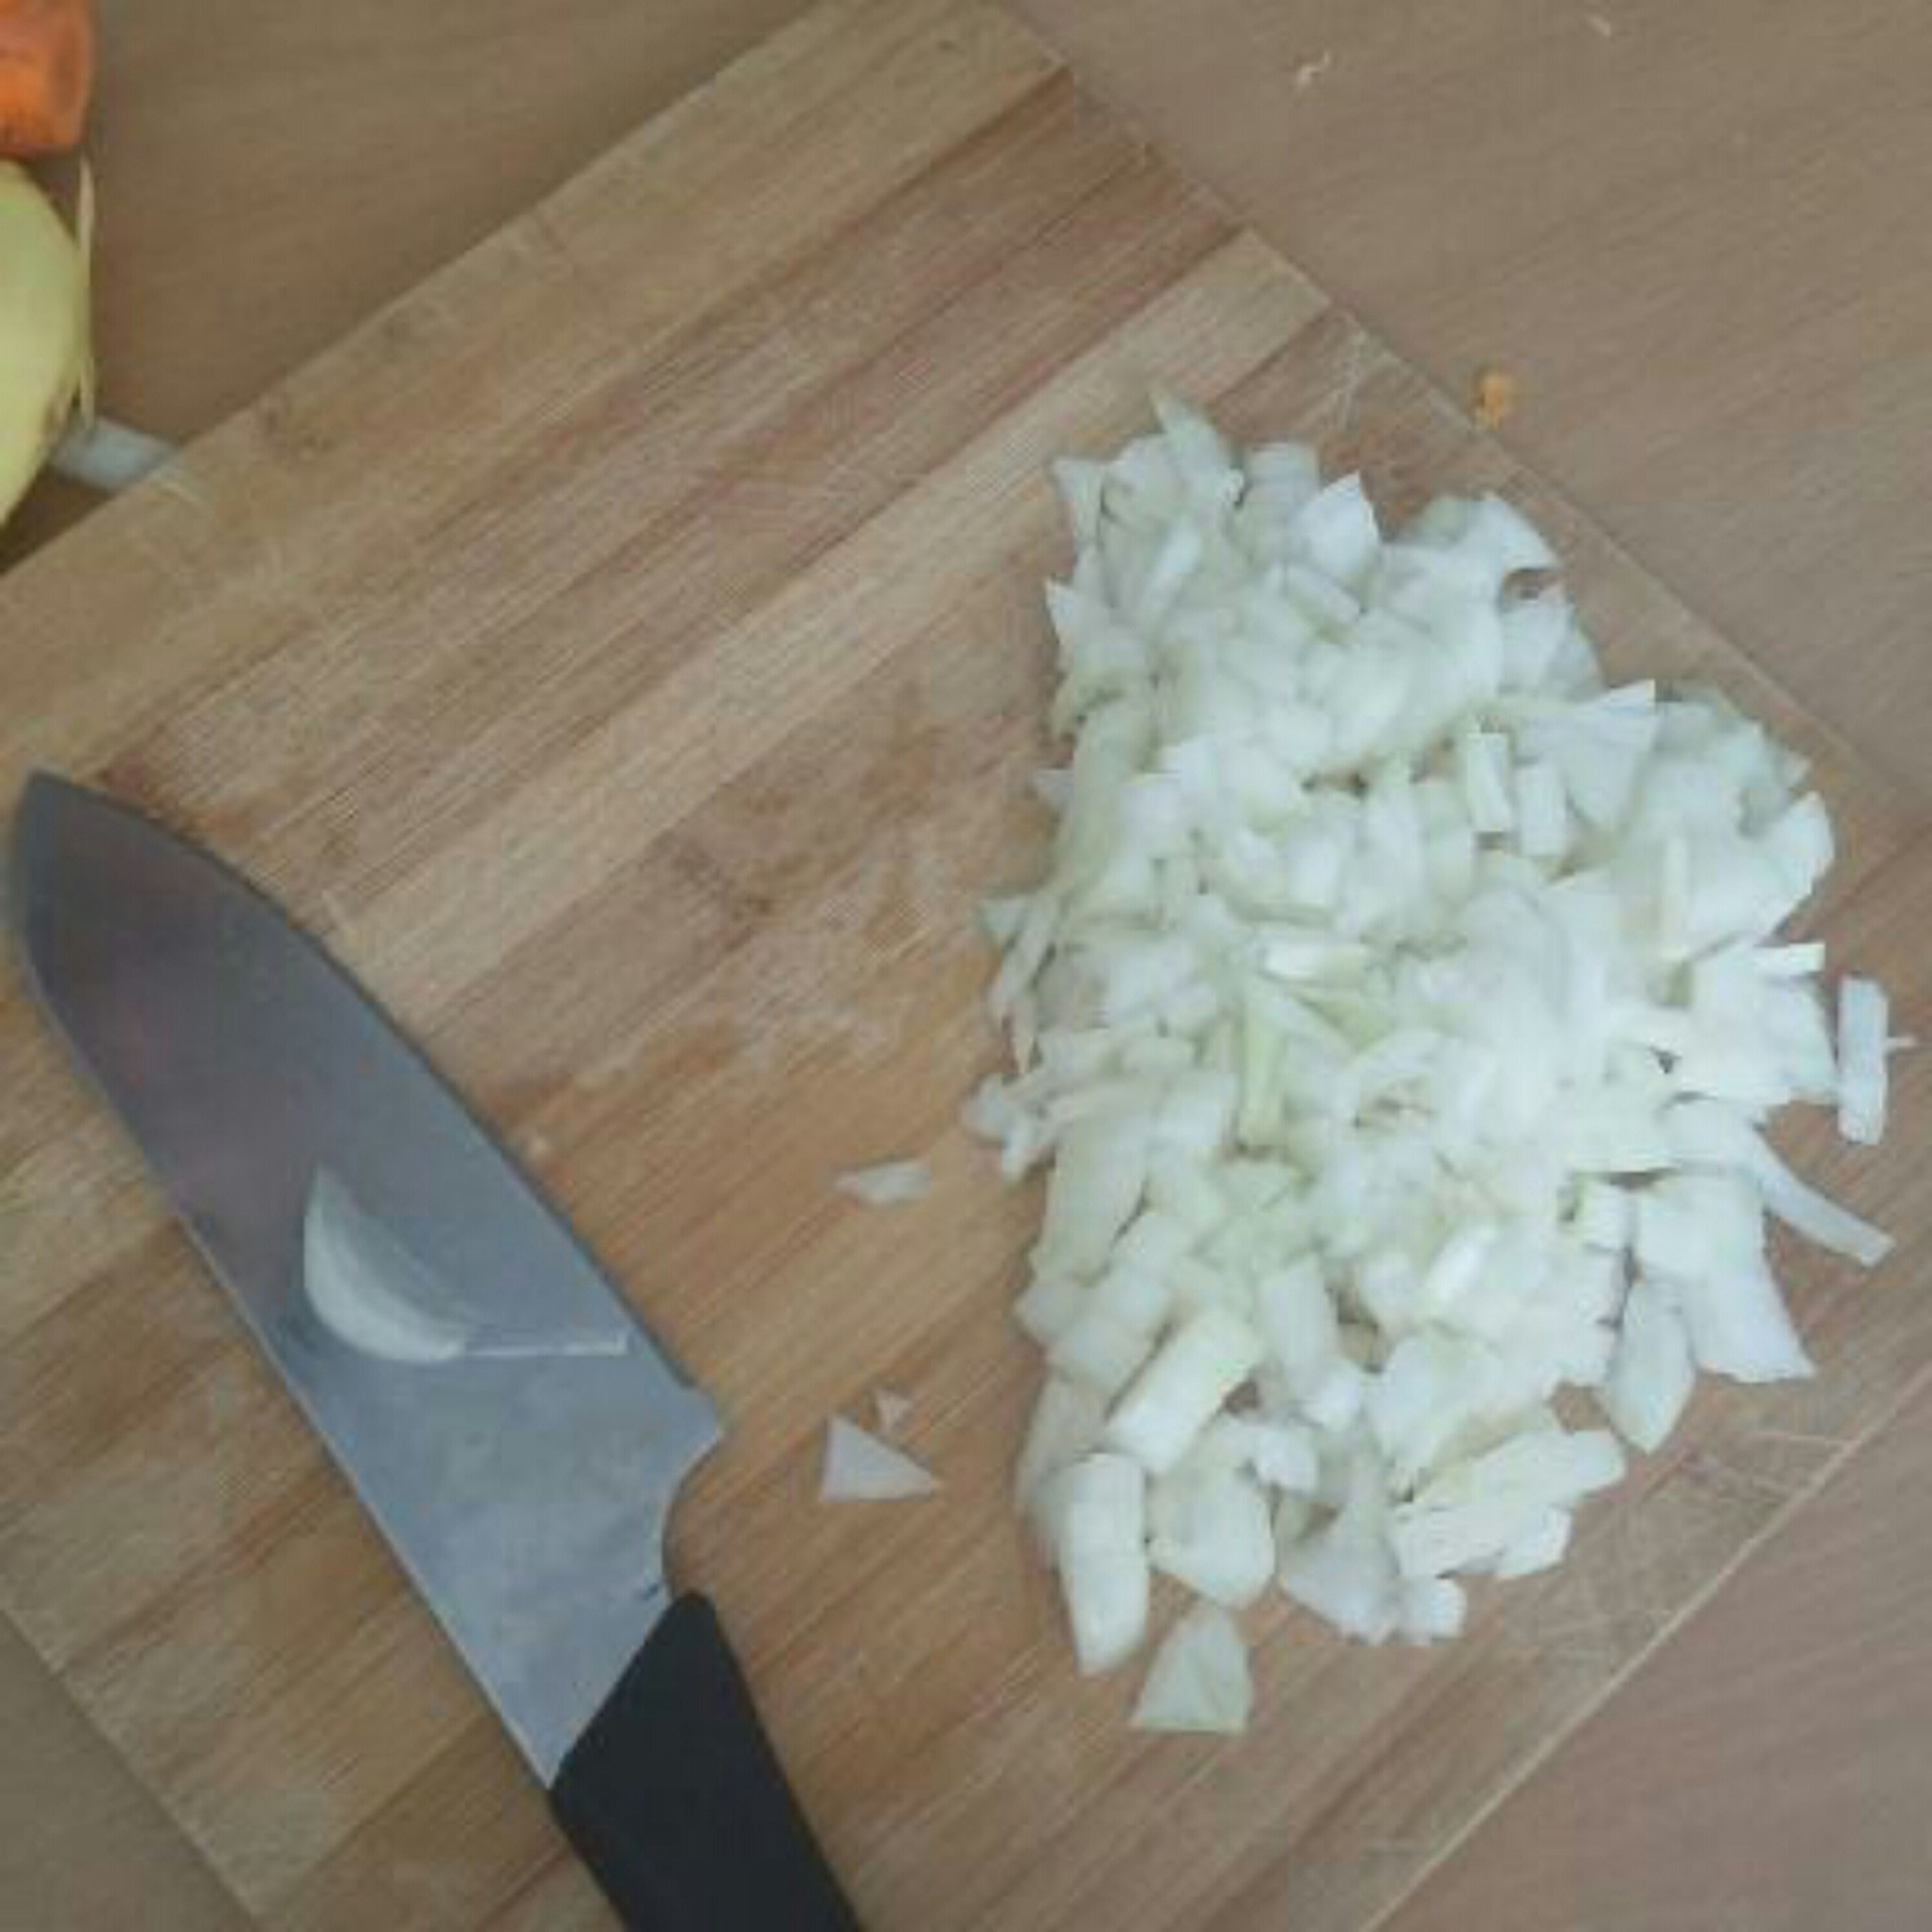 chop onions, potato and carrot